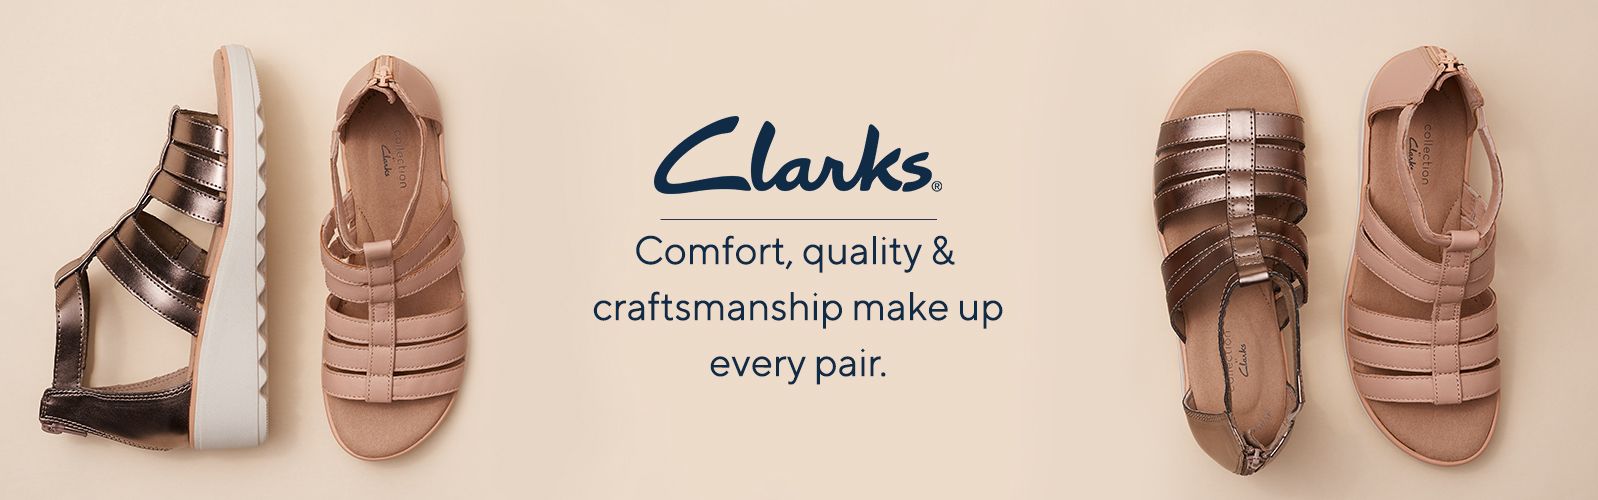 clarks diamante sandals